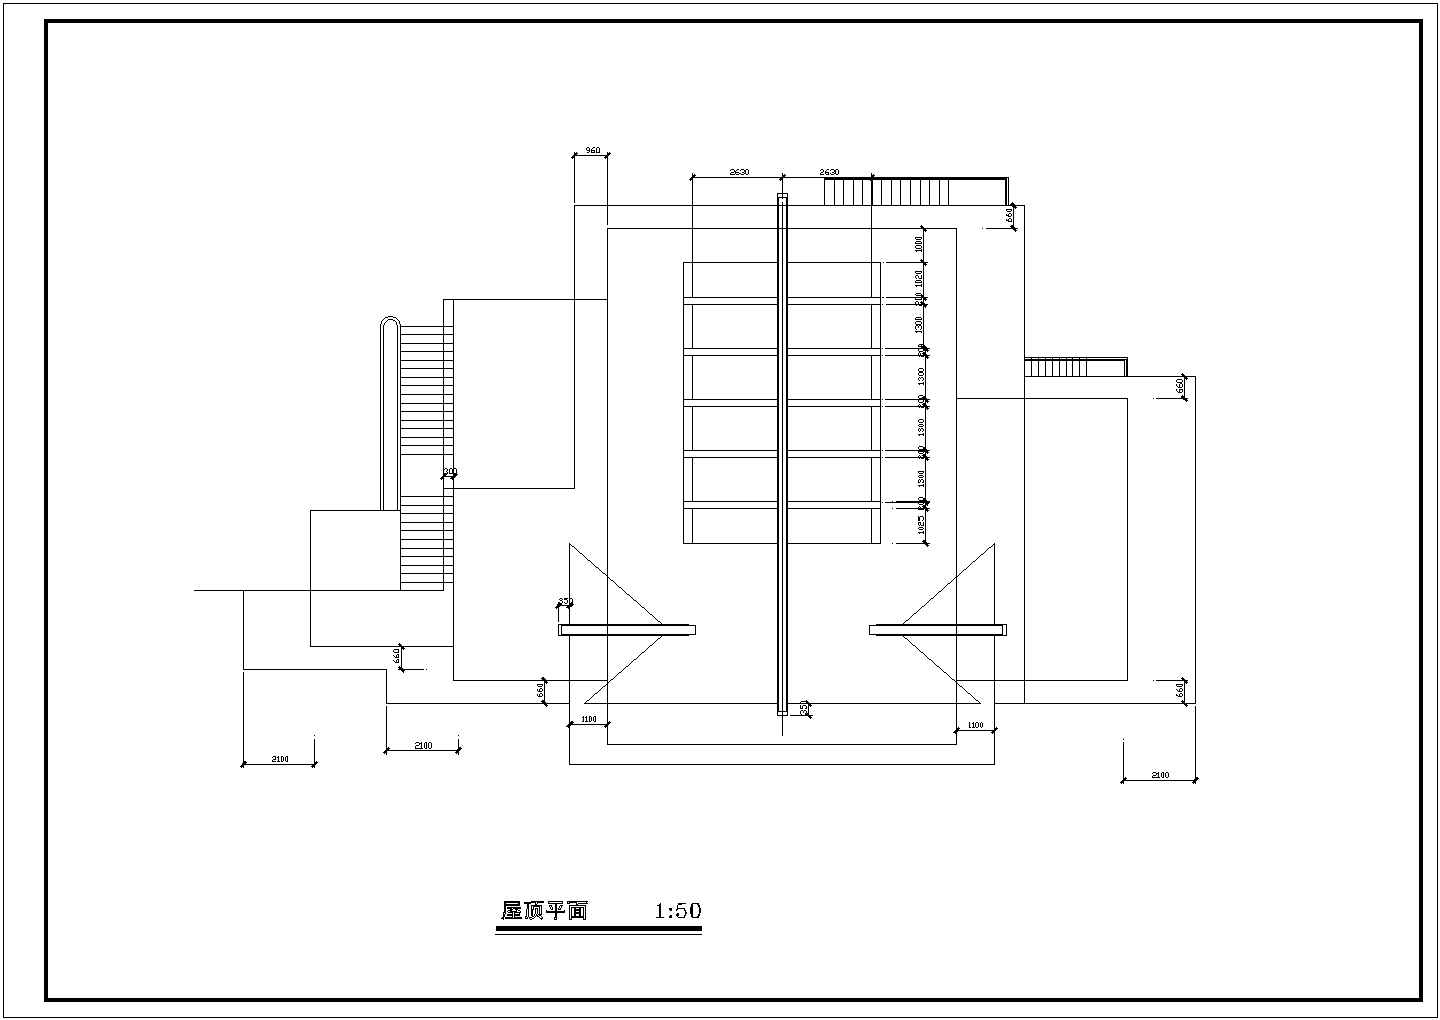 索道上部站茶室建筑设计方案及施工全套CAD图